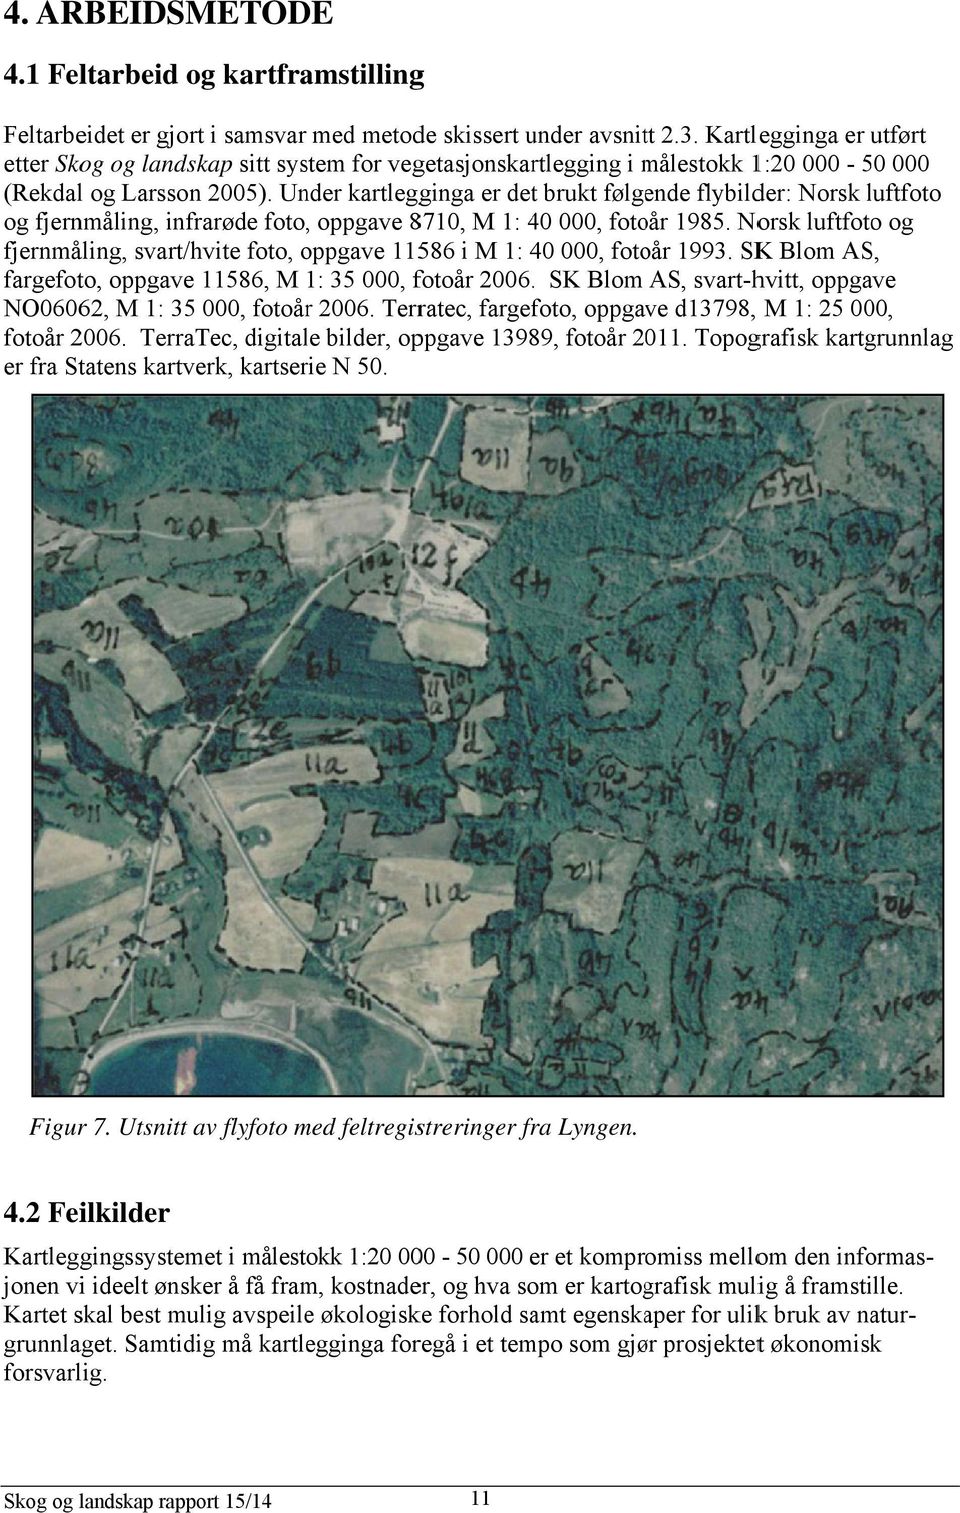 Under kartlegginga er det brukt følgende flybilder: Norsk luftfoto l og fjernmåling, infrarøde foto,, oppgave 8710, M 1: 40 000, fotoår 1985.